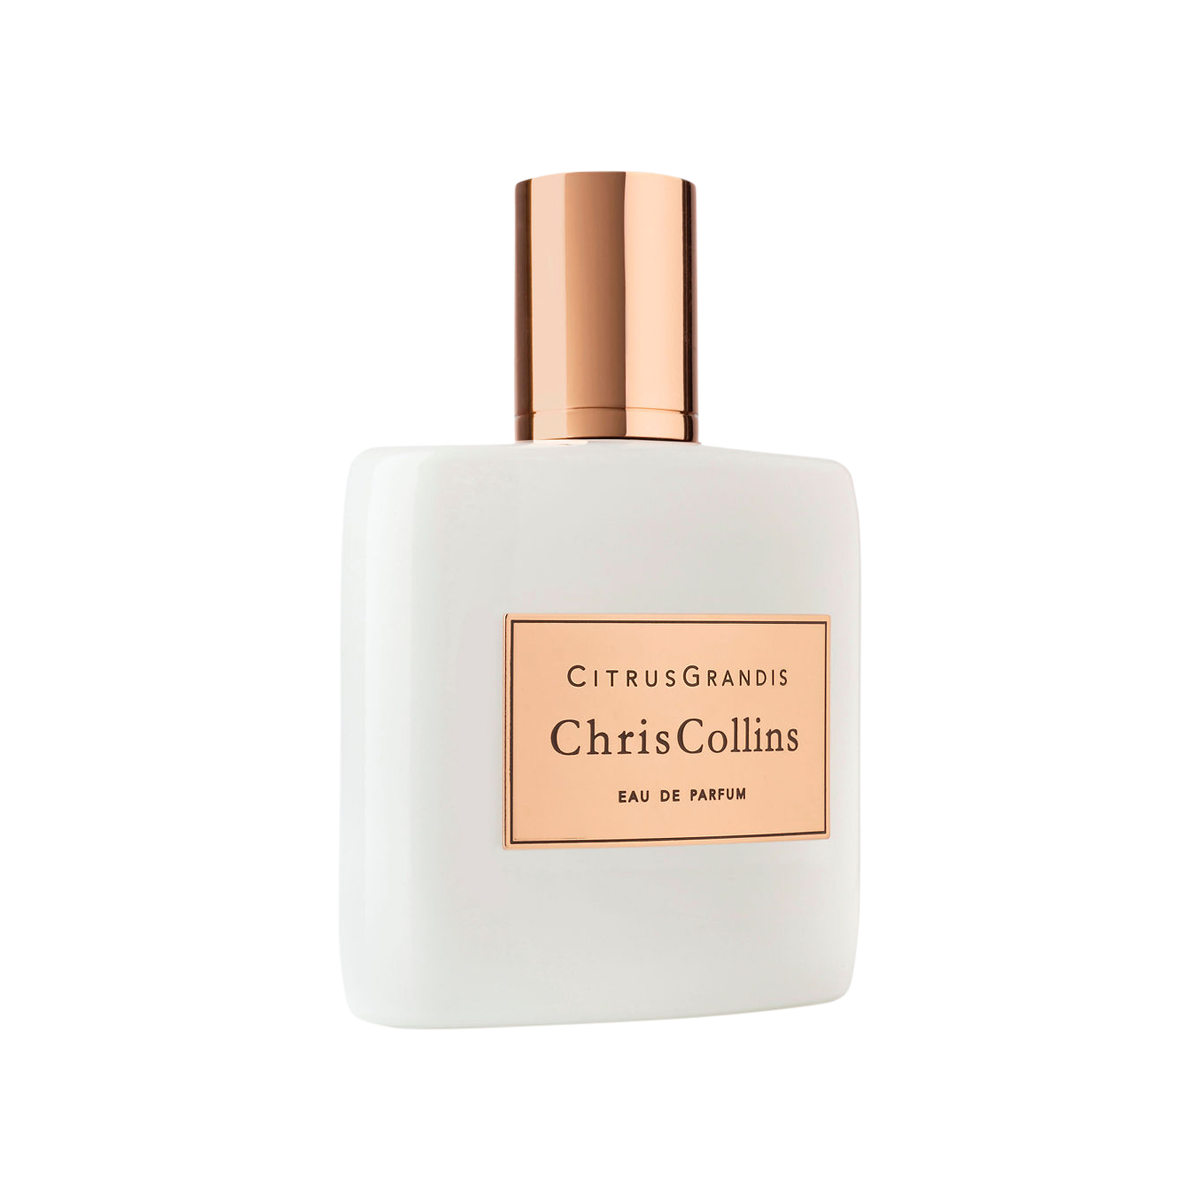 Chris Collins - Citrus Grandis Eau de Parfum